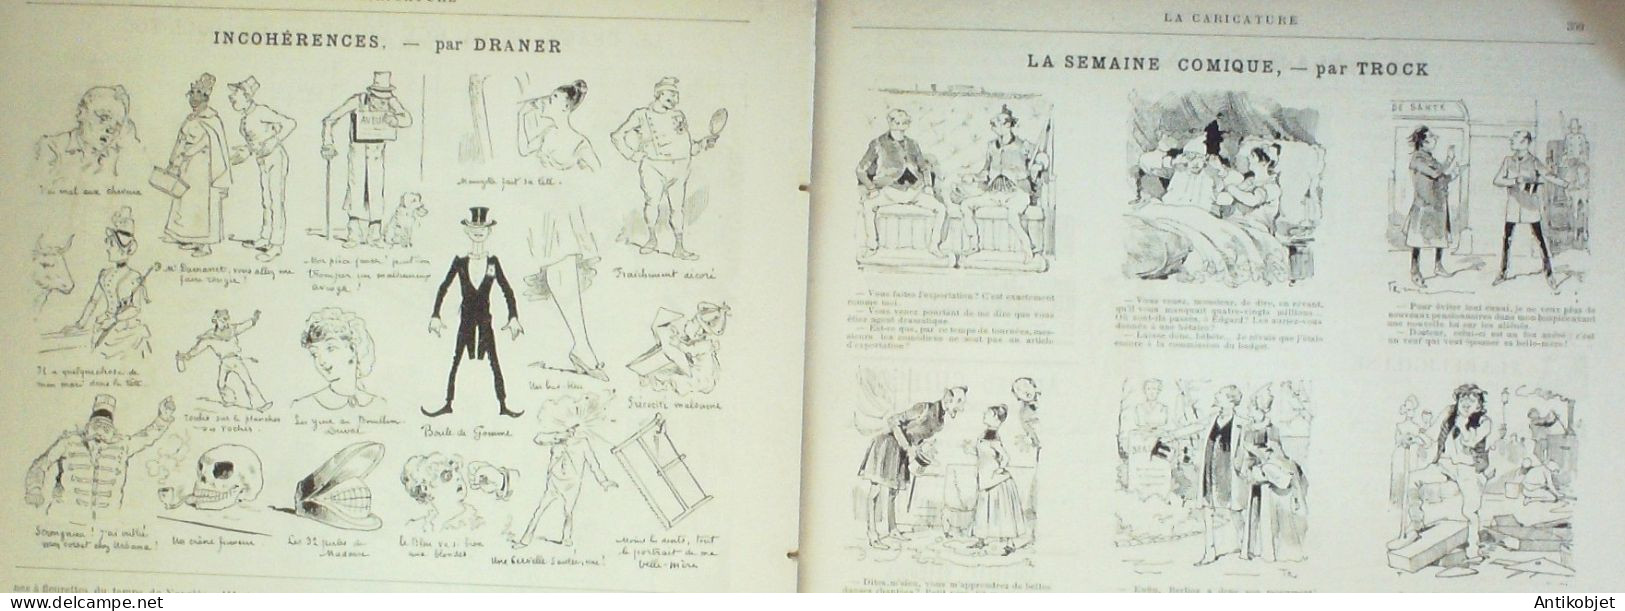 La Caricature 1886 N°357 Draner Vigeant Par Luque Drame Rue Chose Coll-Toc Caran D'Ache - Riviste - Ante 1900